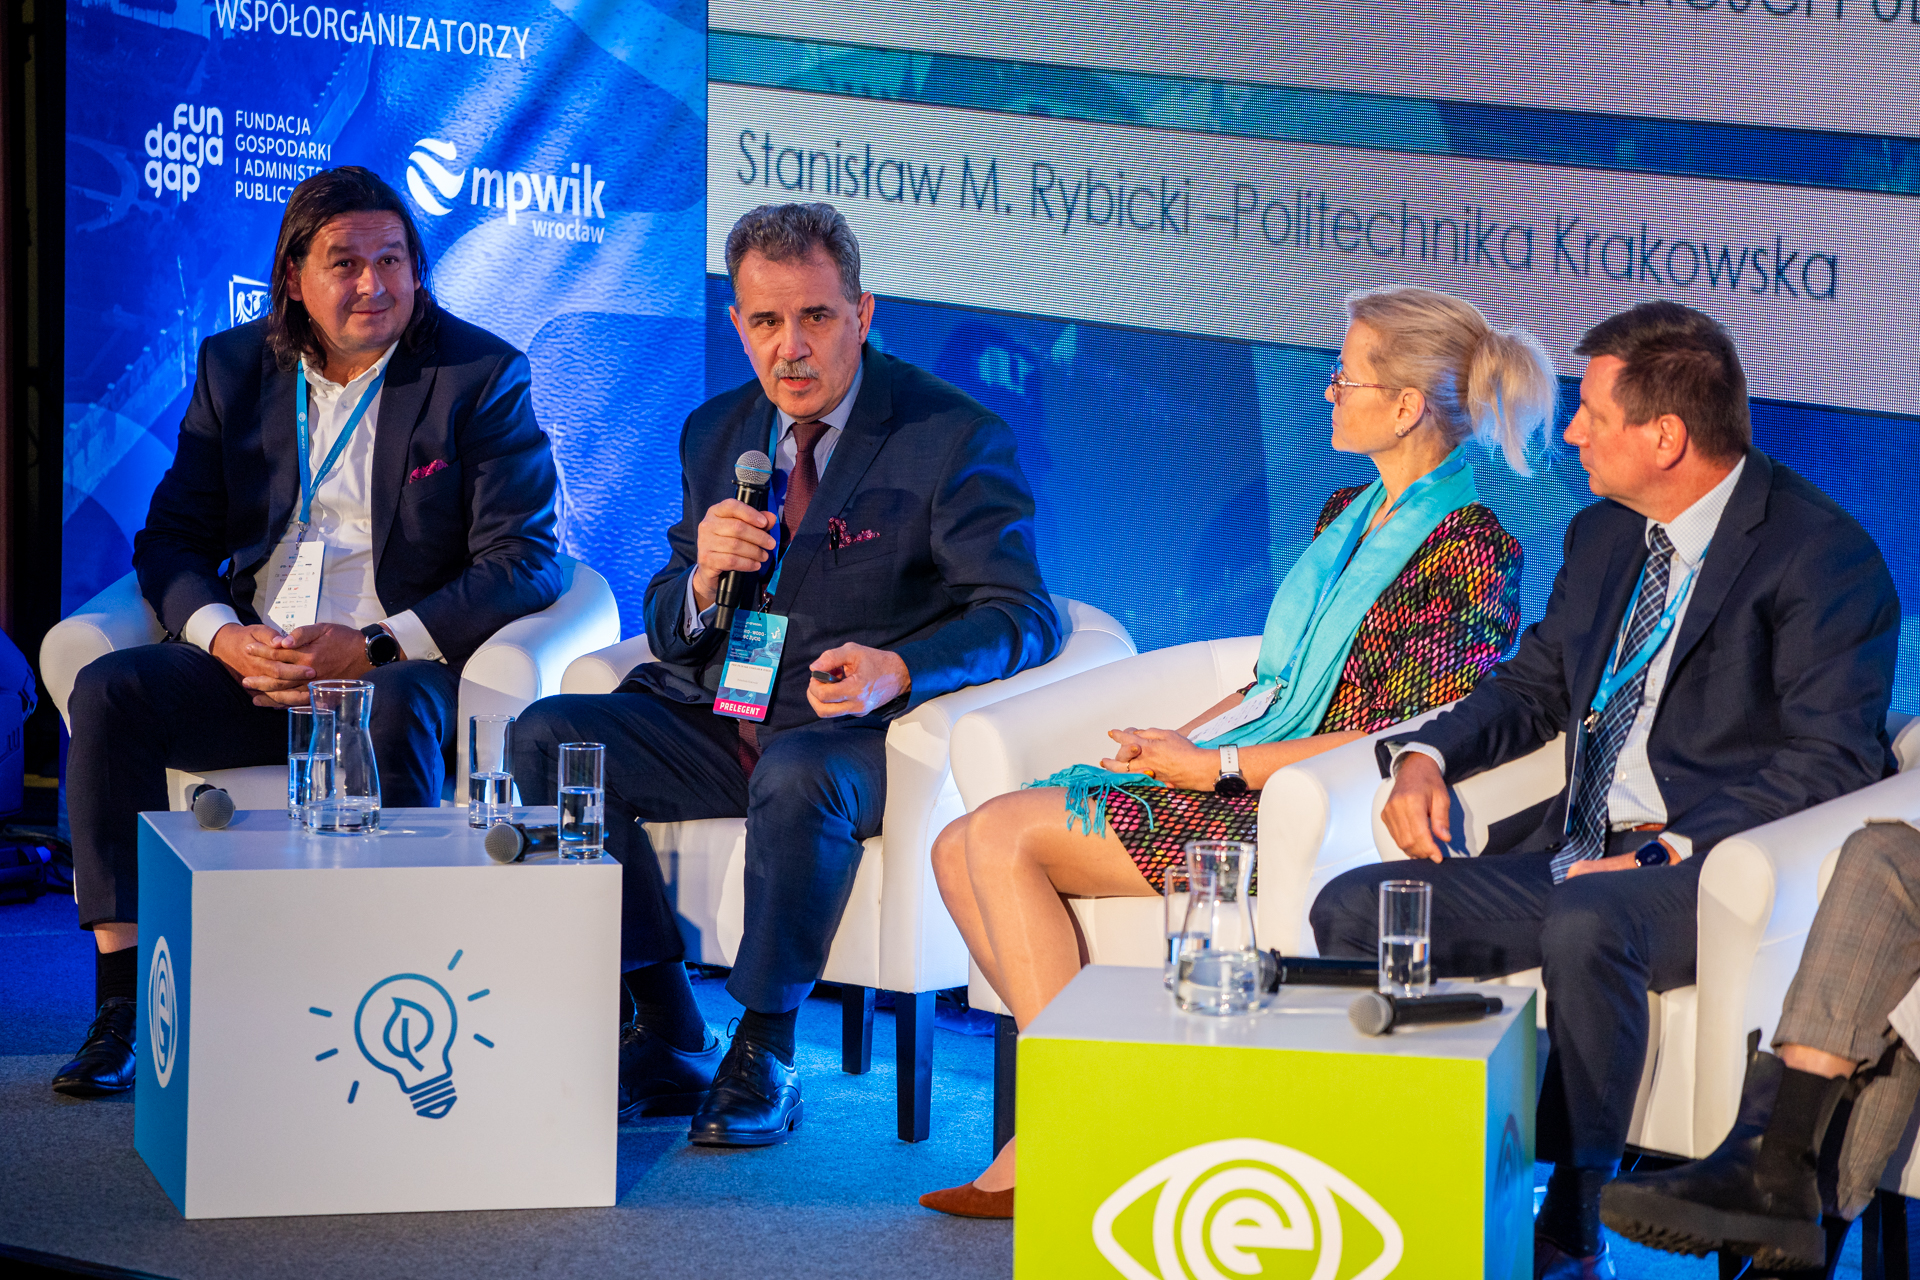 Cztery osoby siedzą na scenie i prowadzą dyskusję. Wśród nich profesor Stanisław Rybicki, który trzyma mikrofon. 